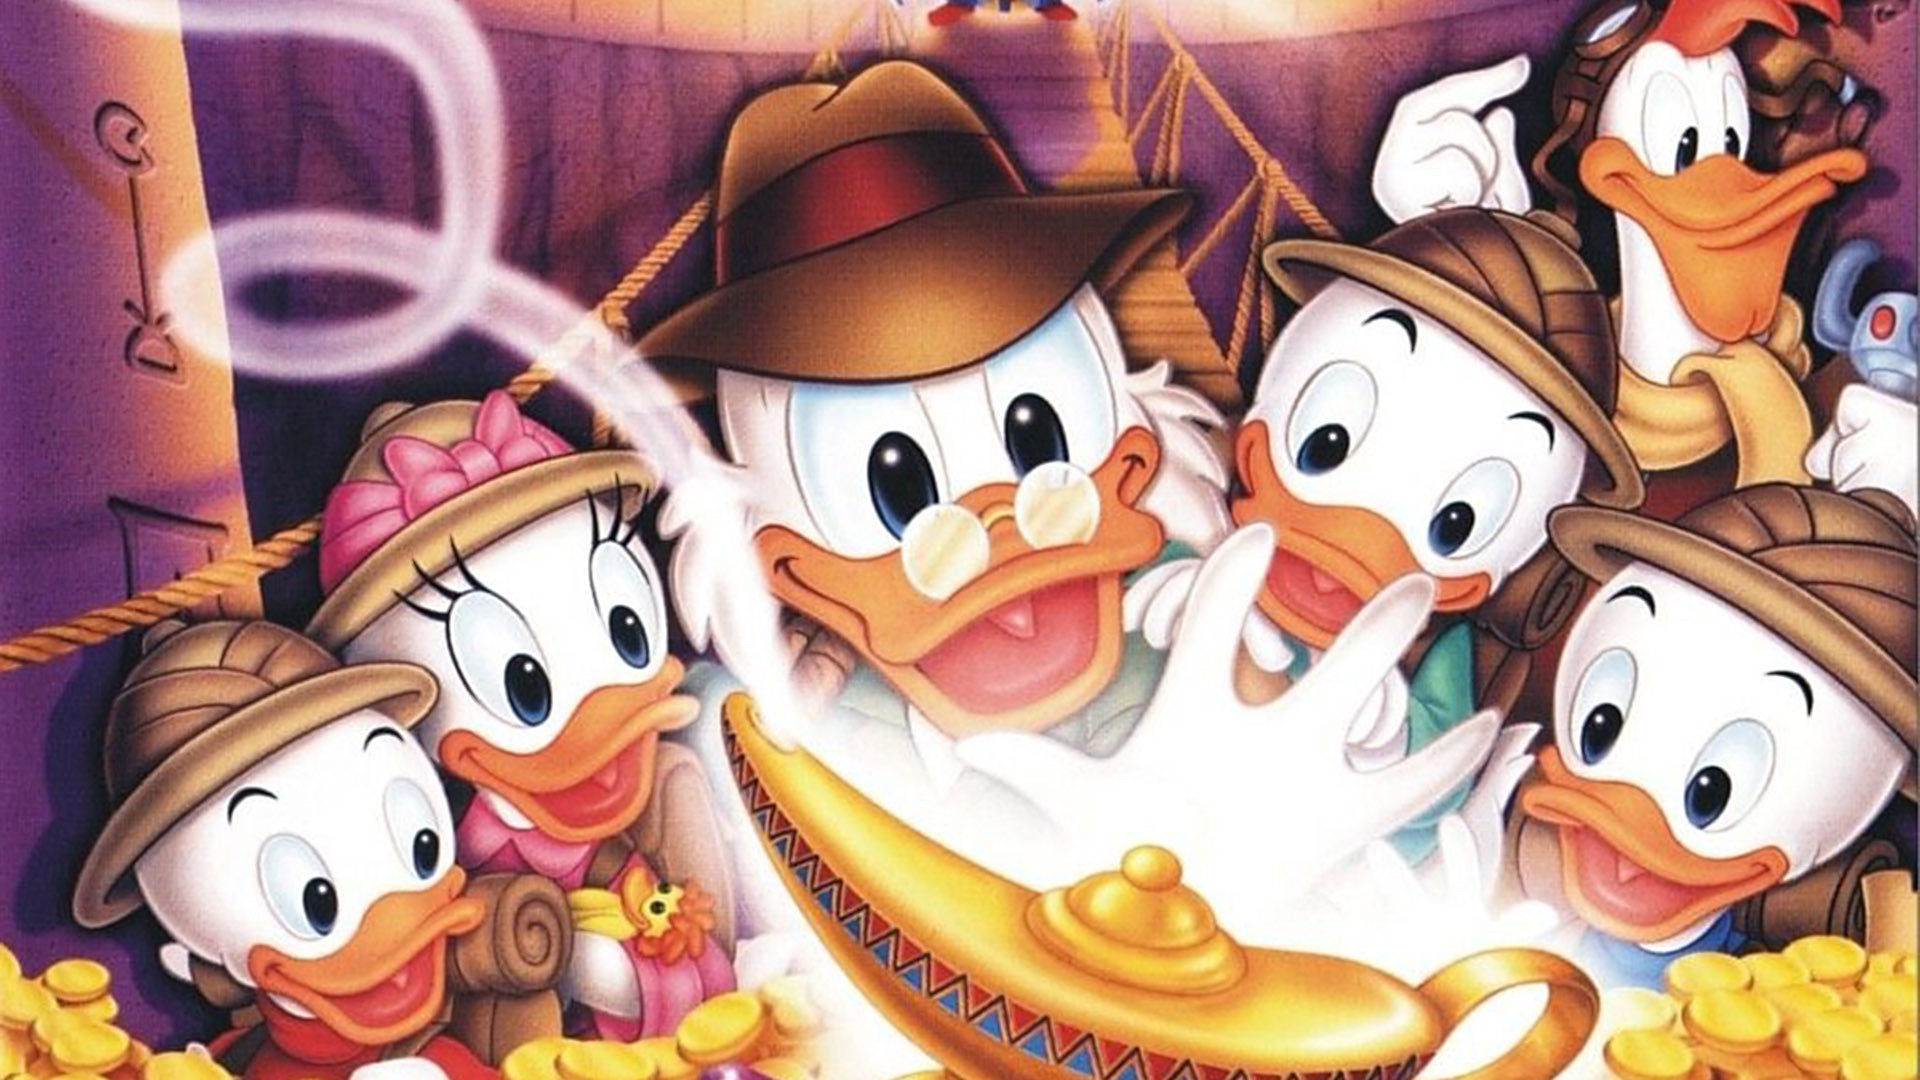 Ducktales (1987) Wallpapers